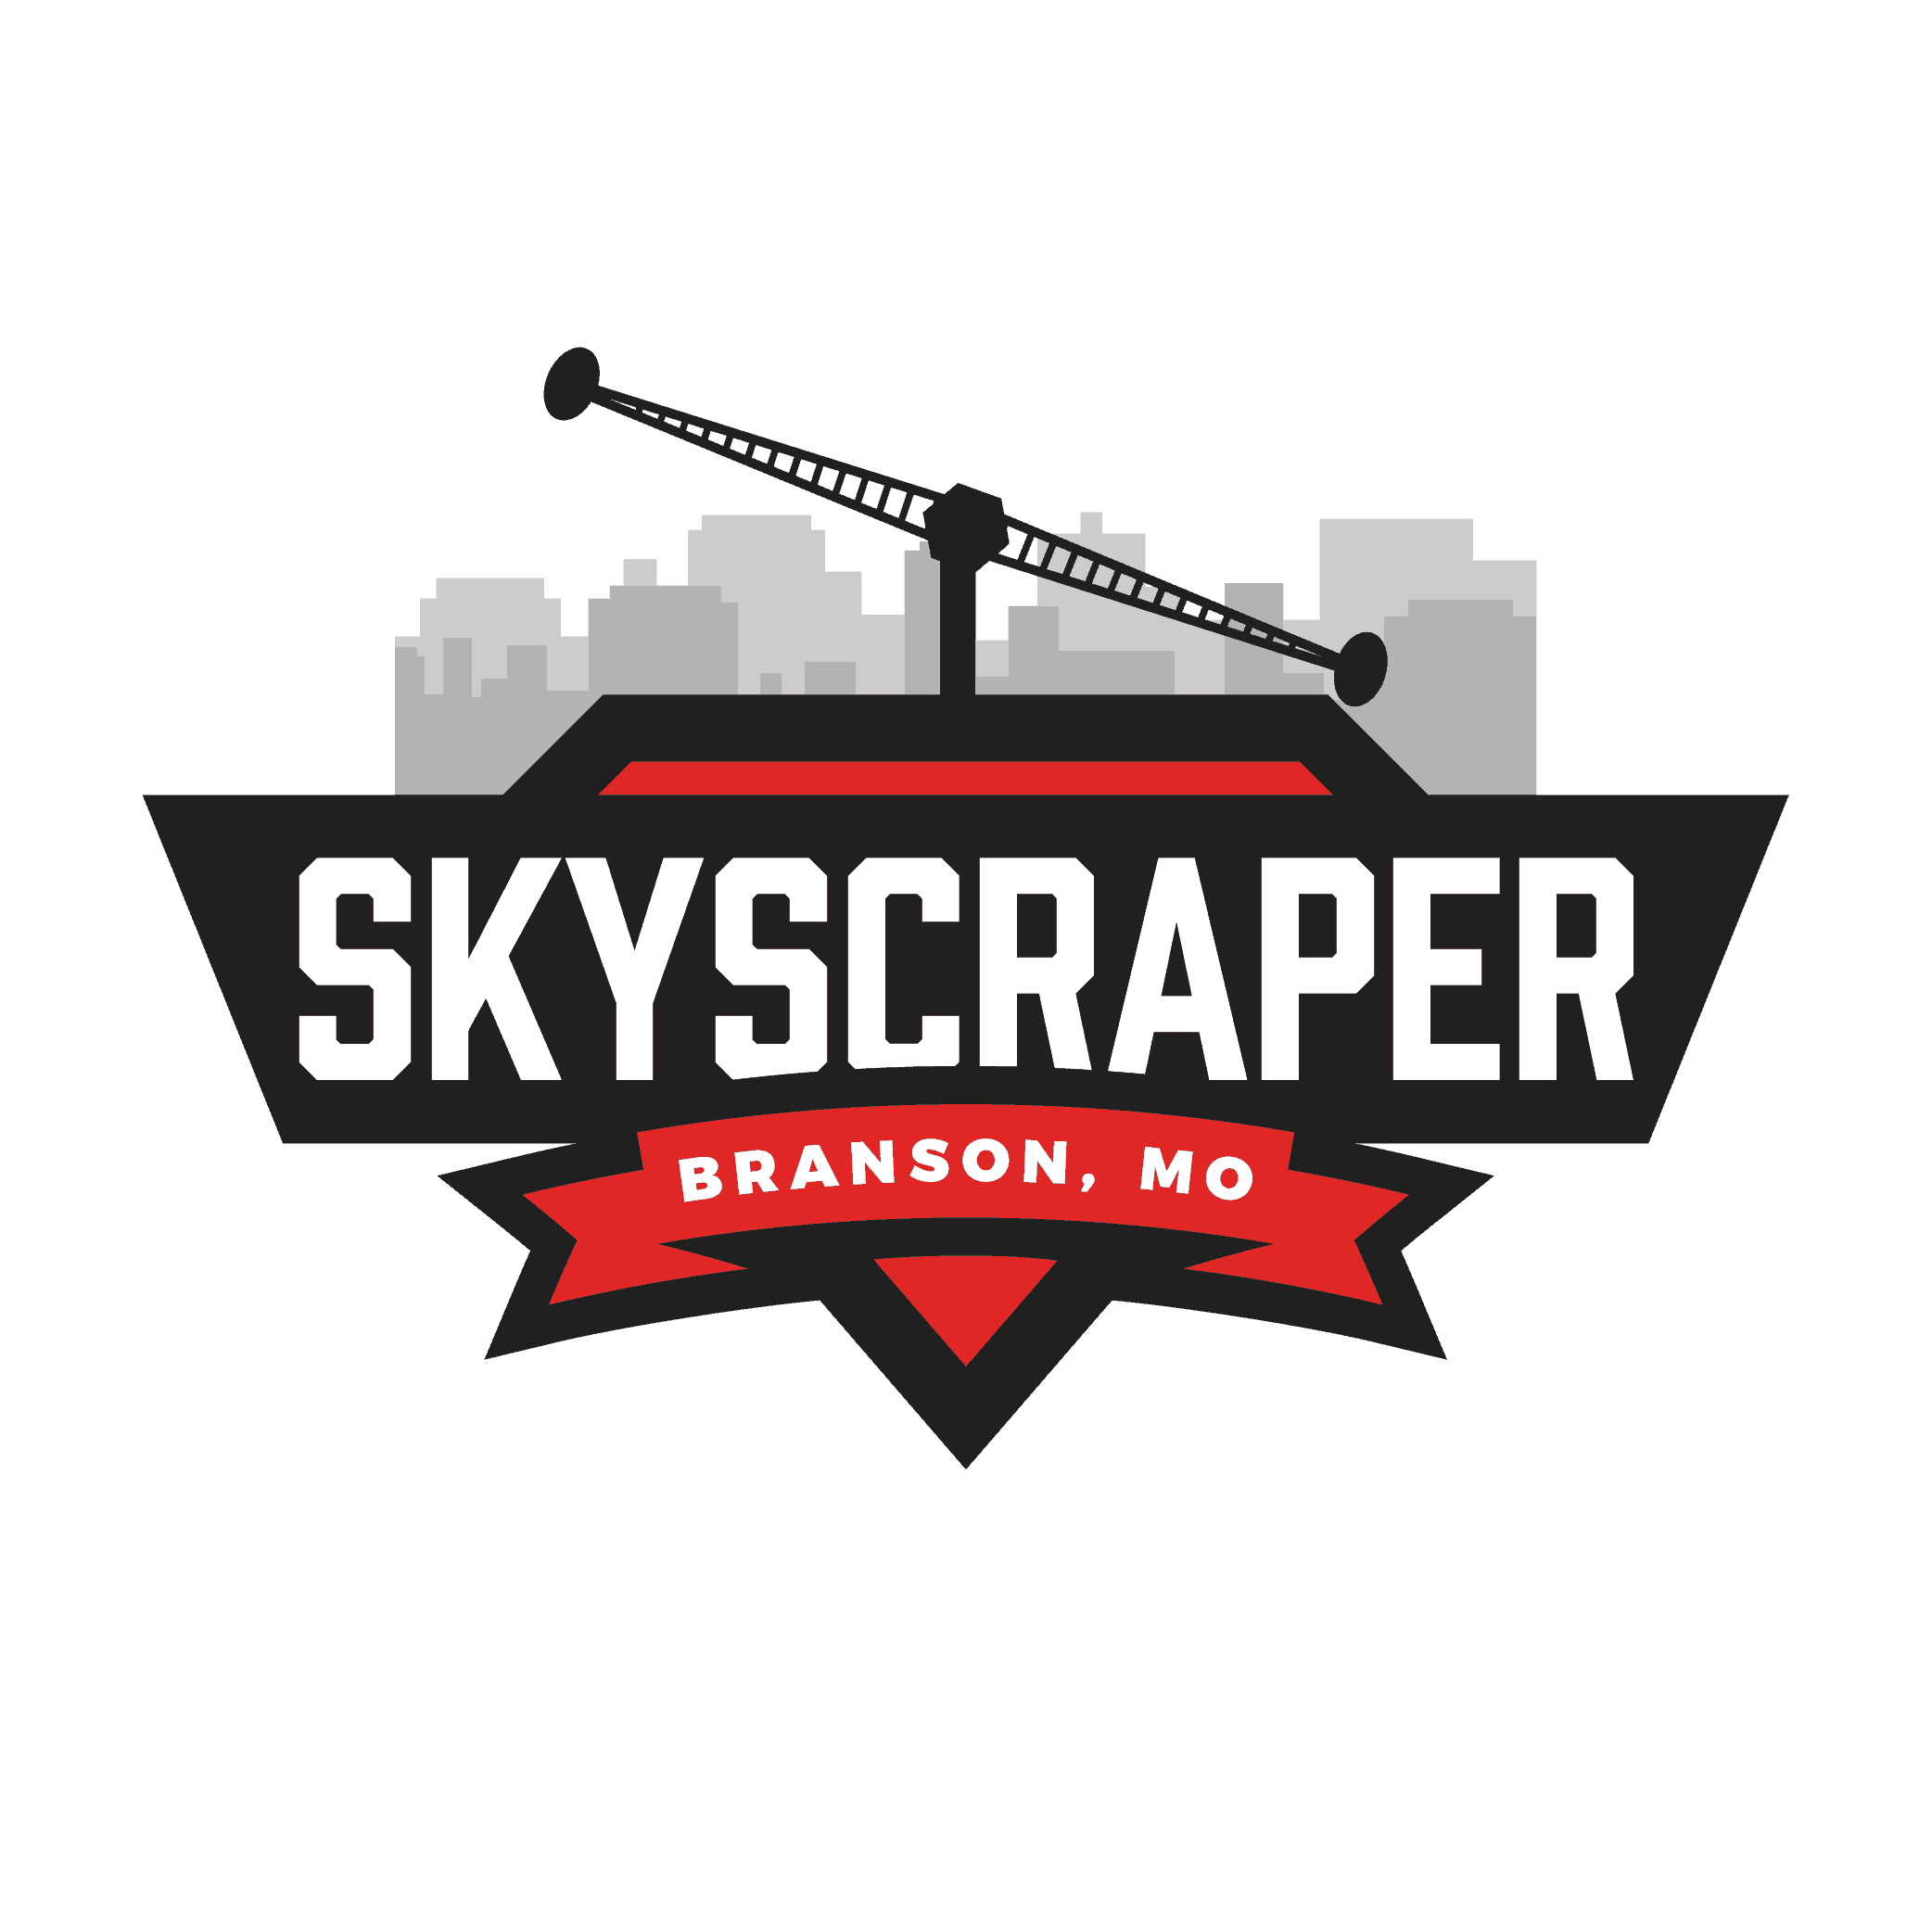 Skyscraper Logo - The Skycoaster Is A Top Branson Missouri Attraction